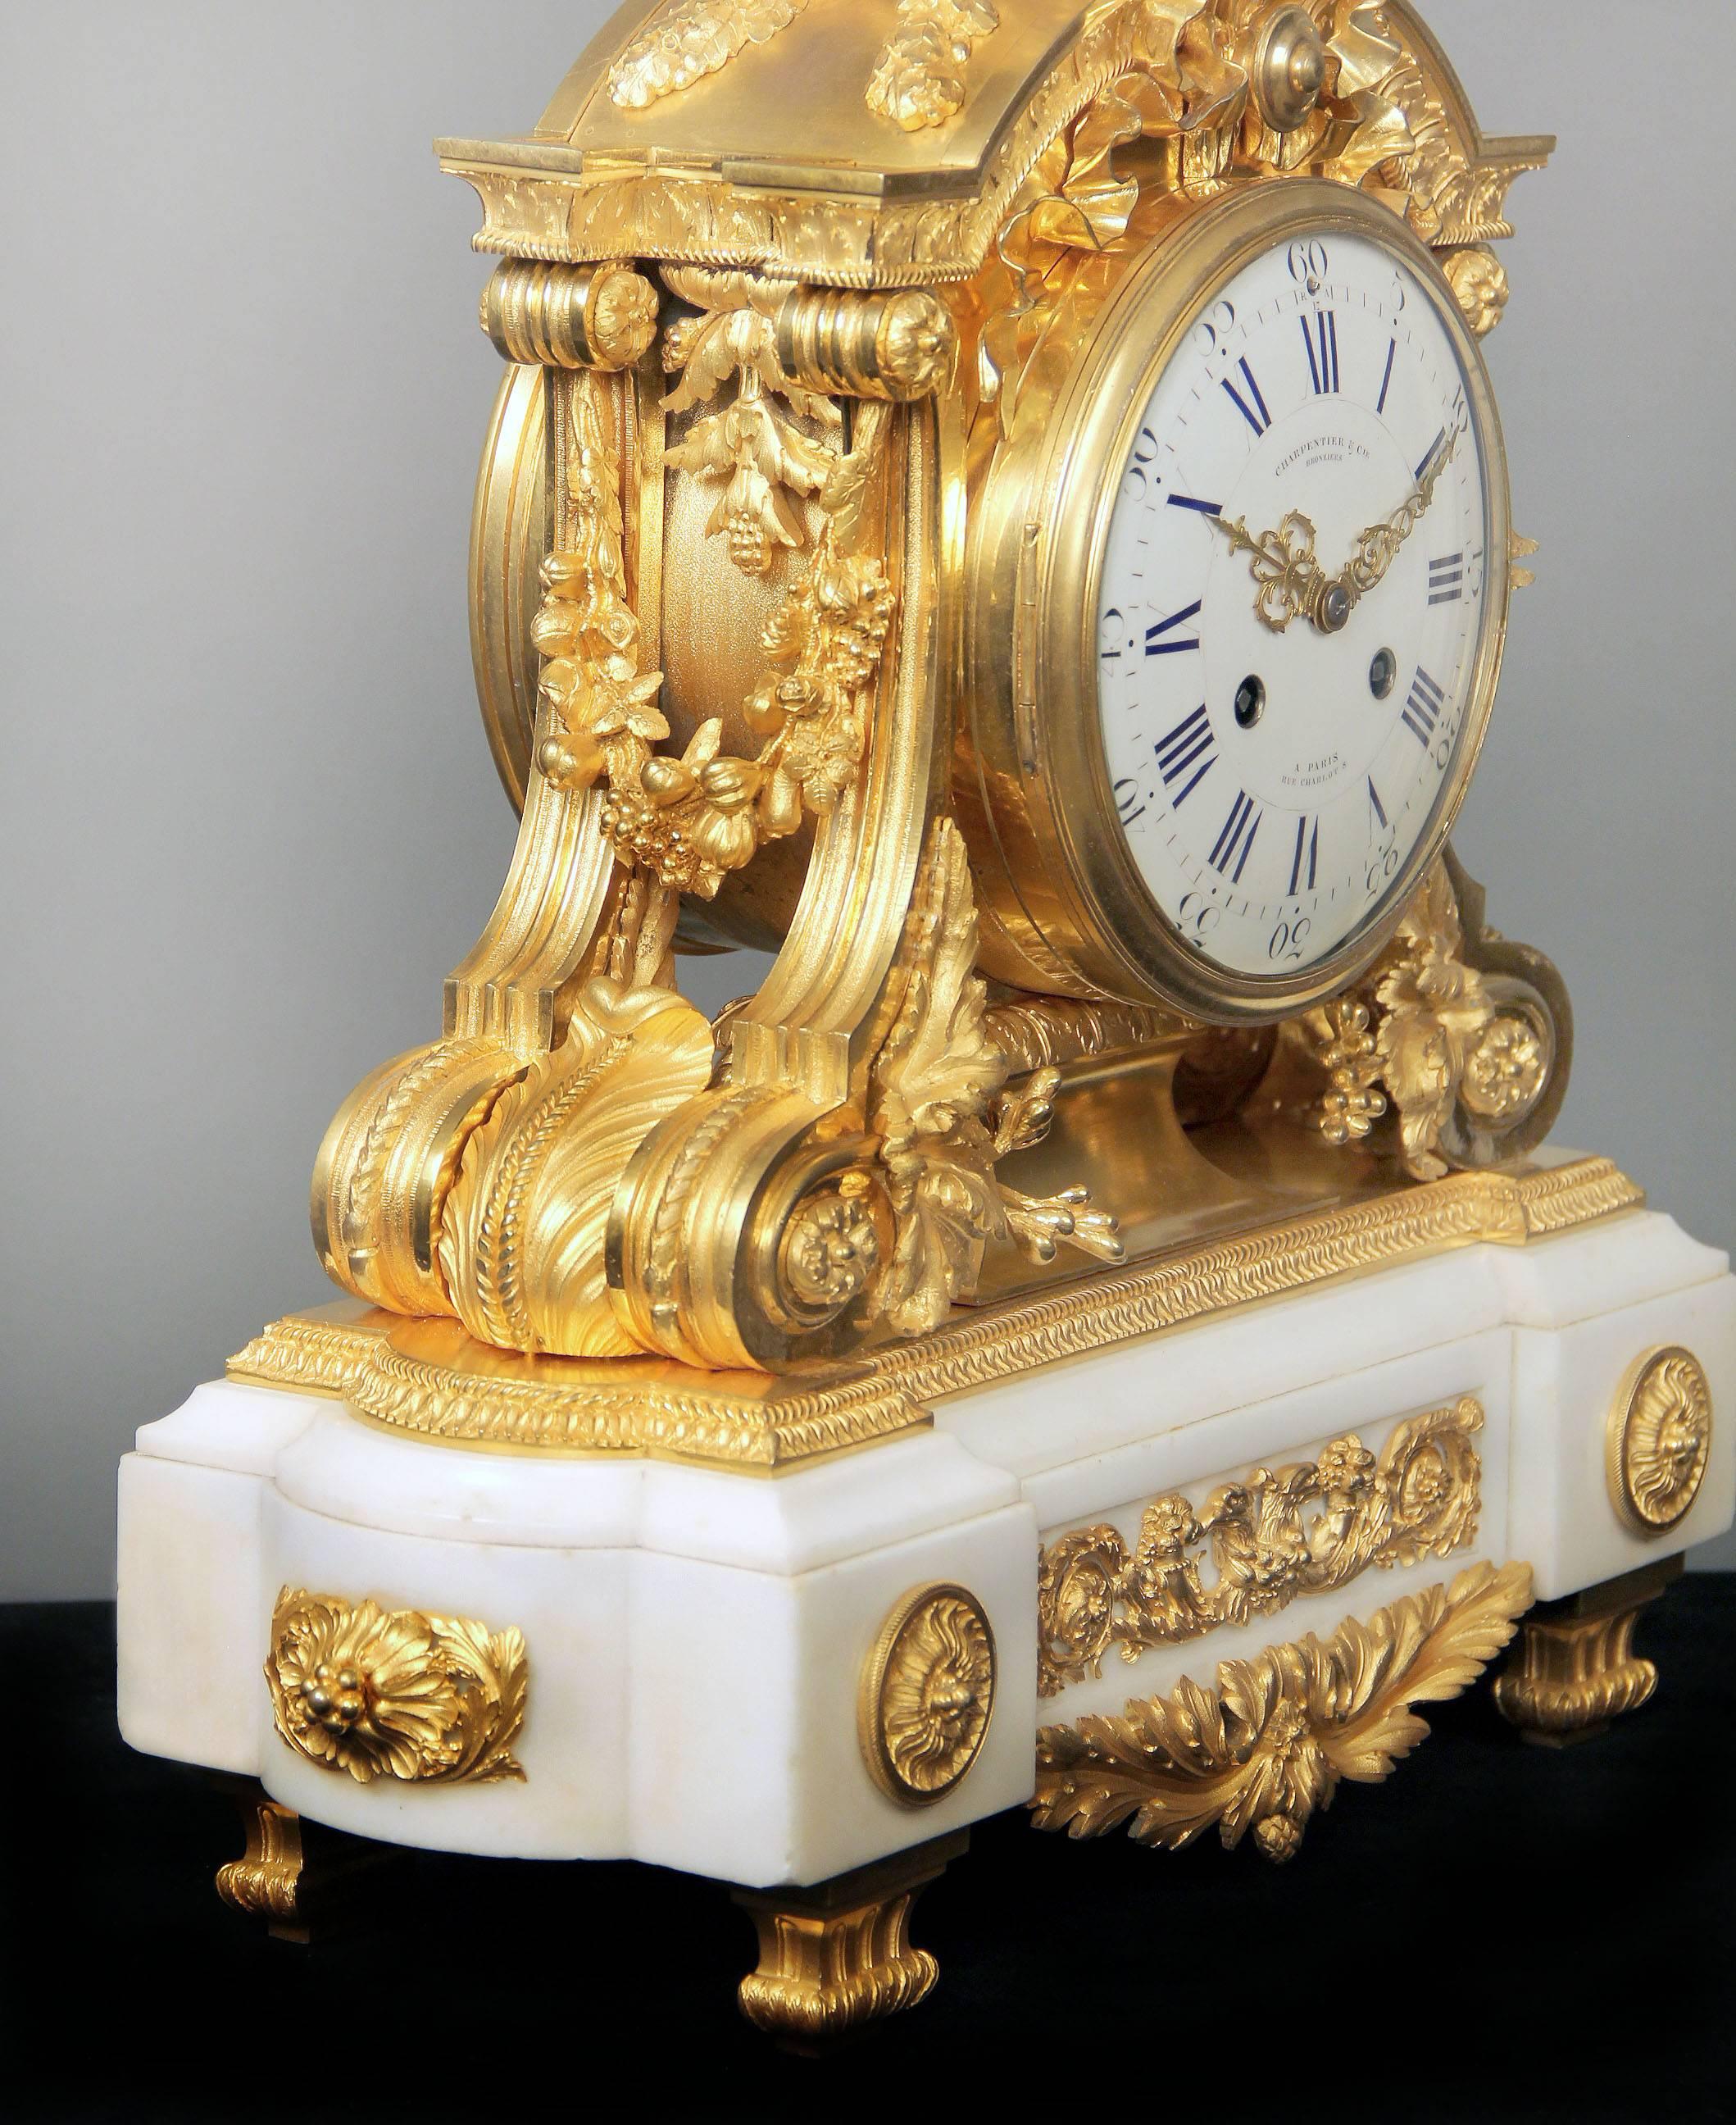 Une horloge de manteau de qualité fantastique de la fin du 19ème siècle en bronze doré et marbre blanc.

Par Charpentier & Compagnie.

Une urne avec des feuilles de laurier au-dessus d'un nœud noué, les côtés avec des guirlandes de fleurs et de